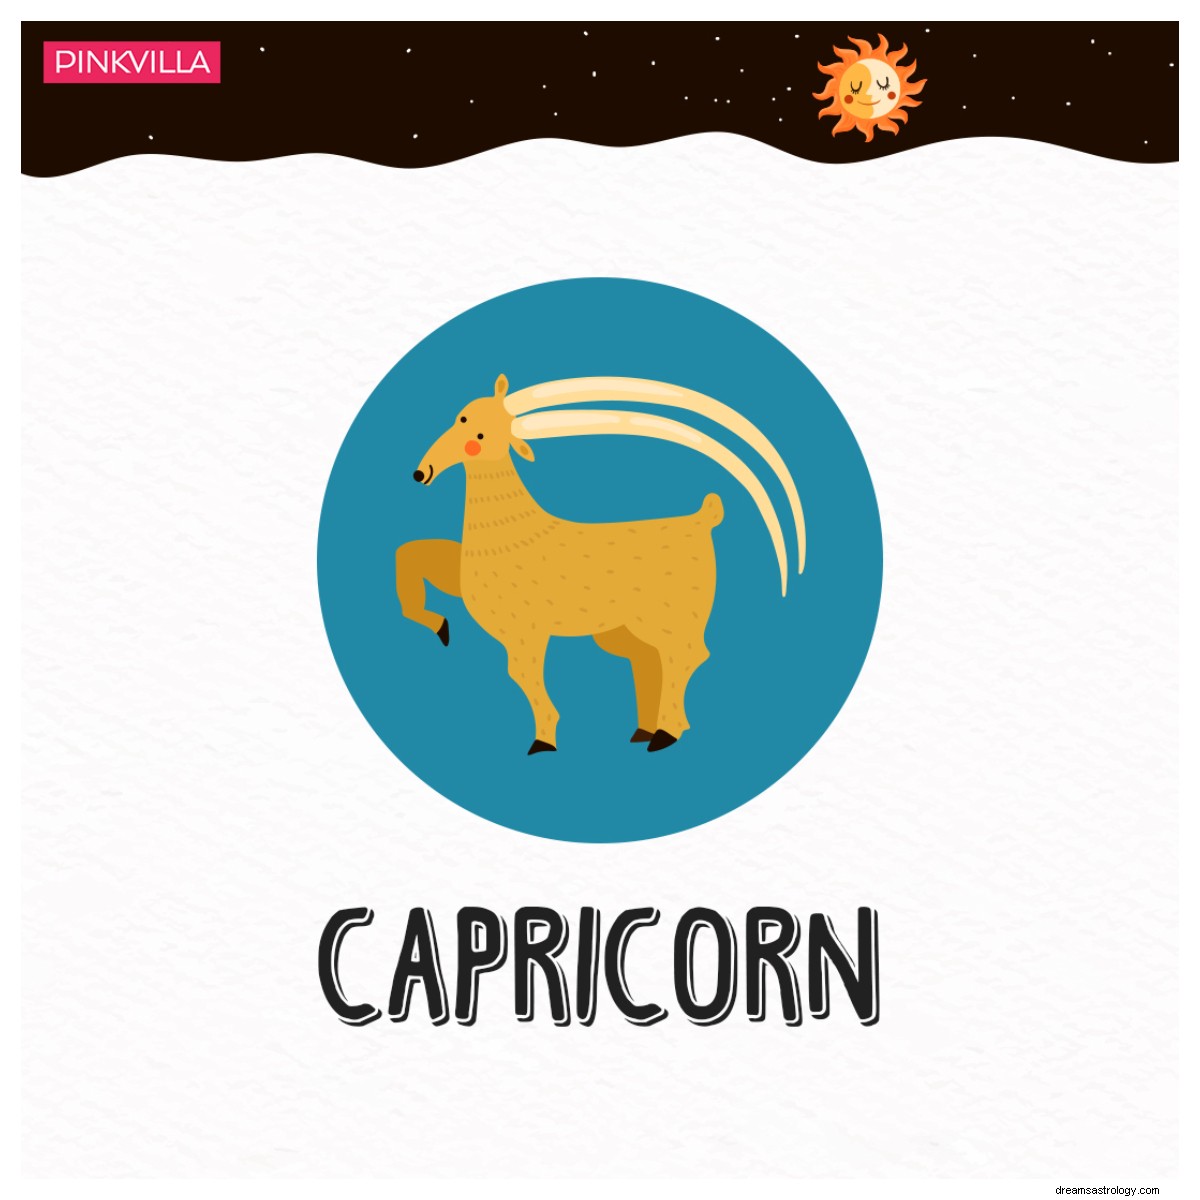 Dal Capricorno allo Scorpione:4 segni zodiacali che abbracciano una crescita personale illimitata 